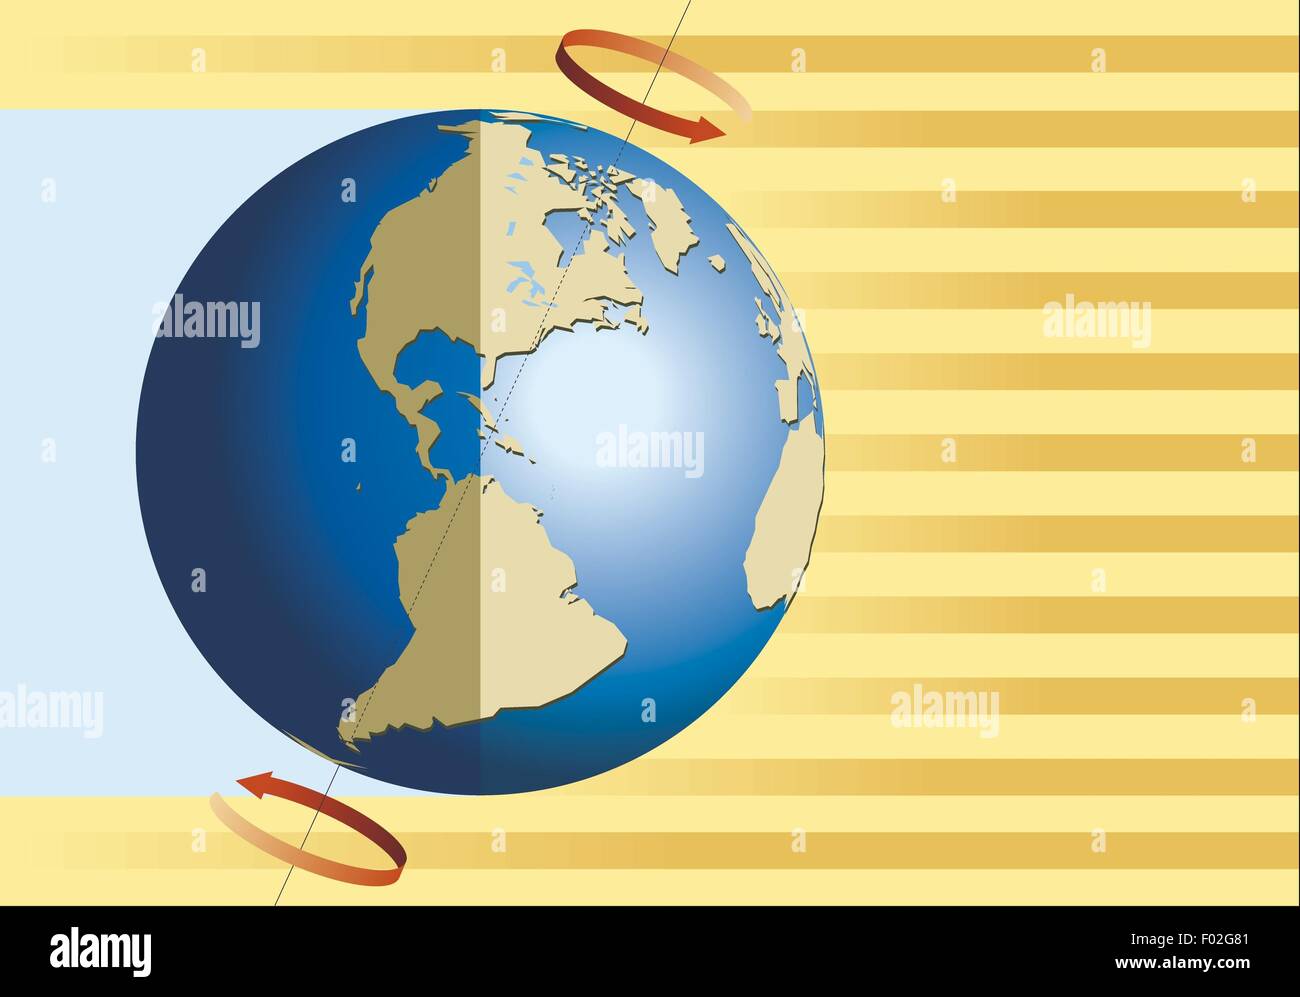 La geografía astronómica - Tierra. La rotación terrestre provoca la alternancia del día y la noche. Diagrama de color Foto de stock